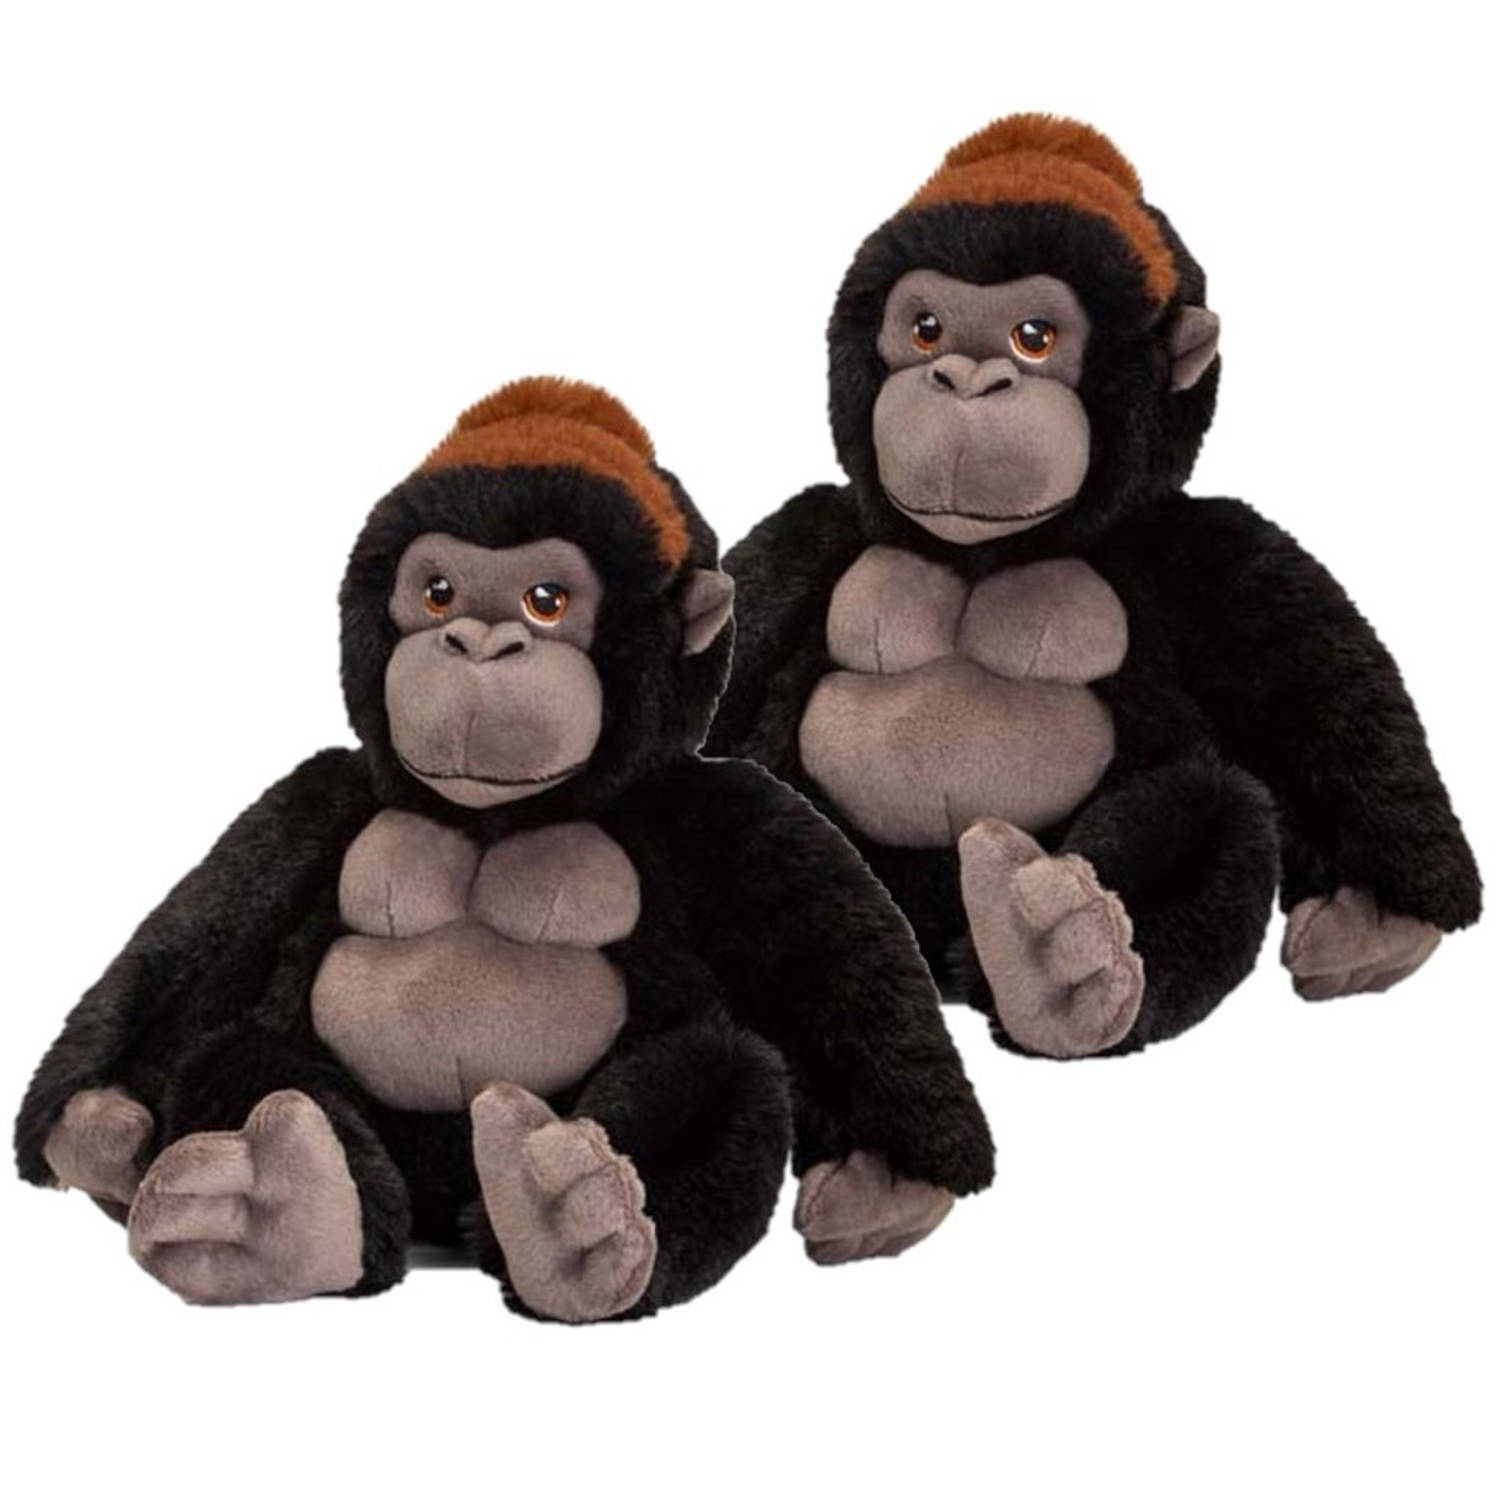 2x Stuks Pluche Knuffel Gorilla Aap-apen Van 20 Cm Dieren Knuffelbeesten Voor Kinderen Of Decoratie